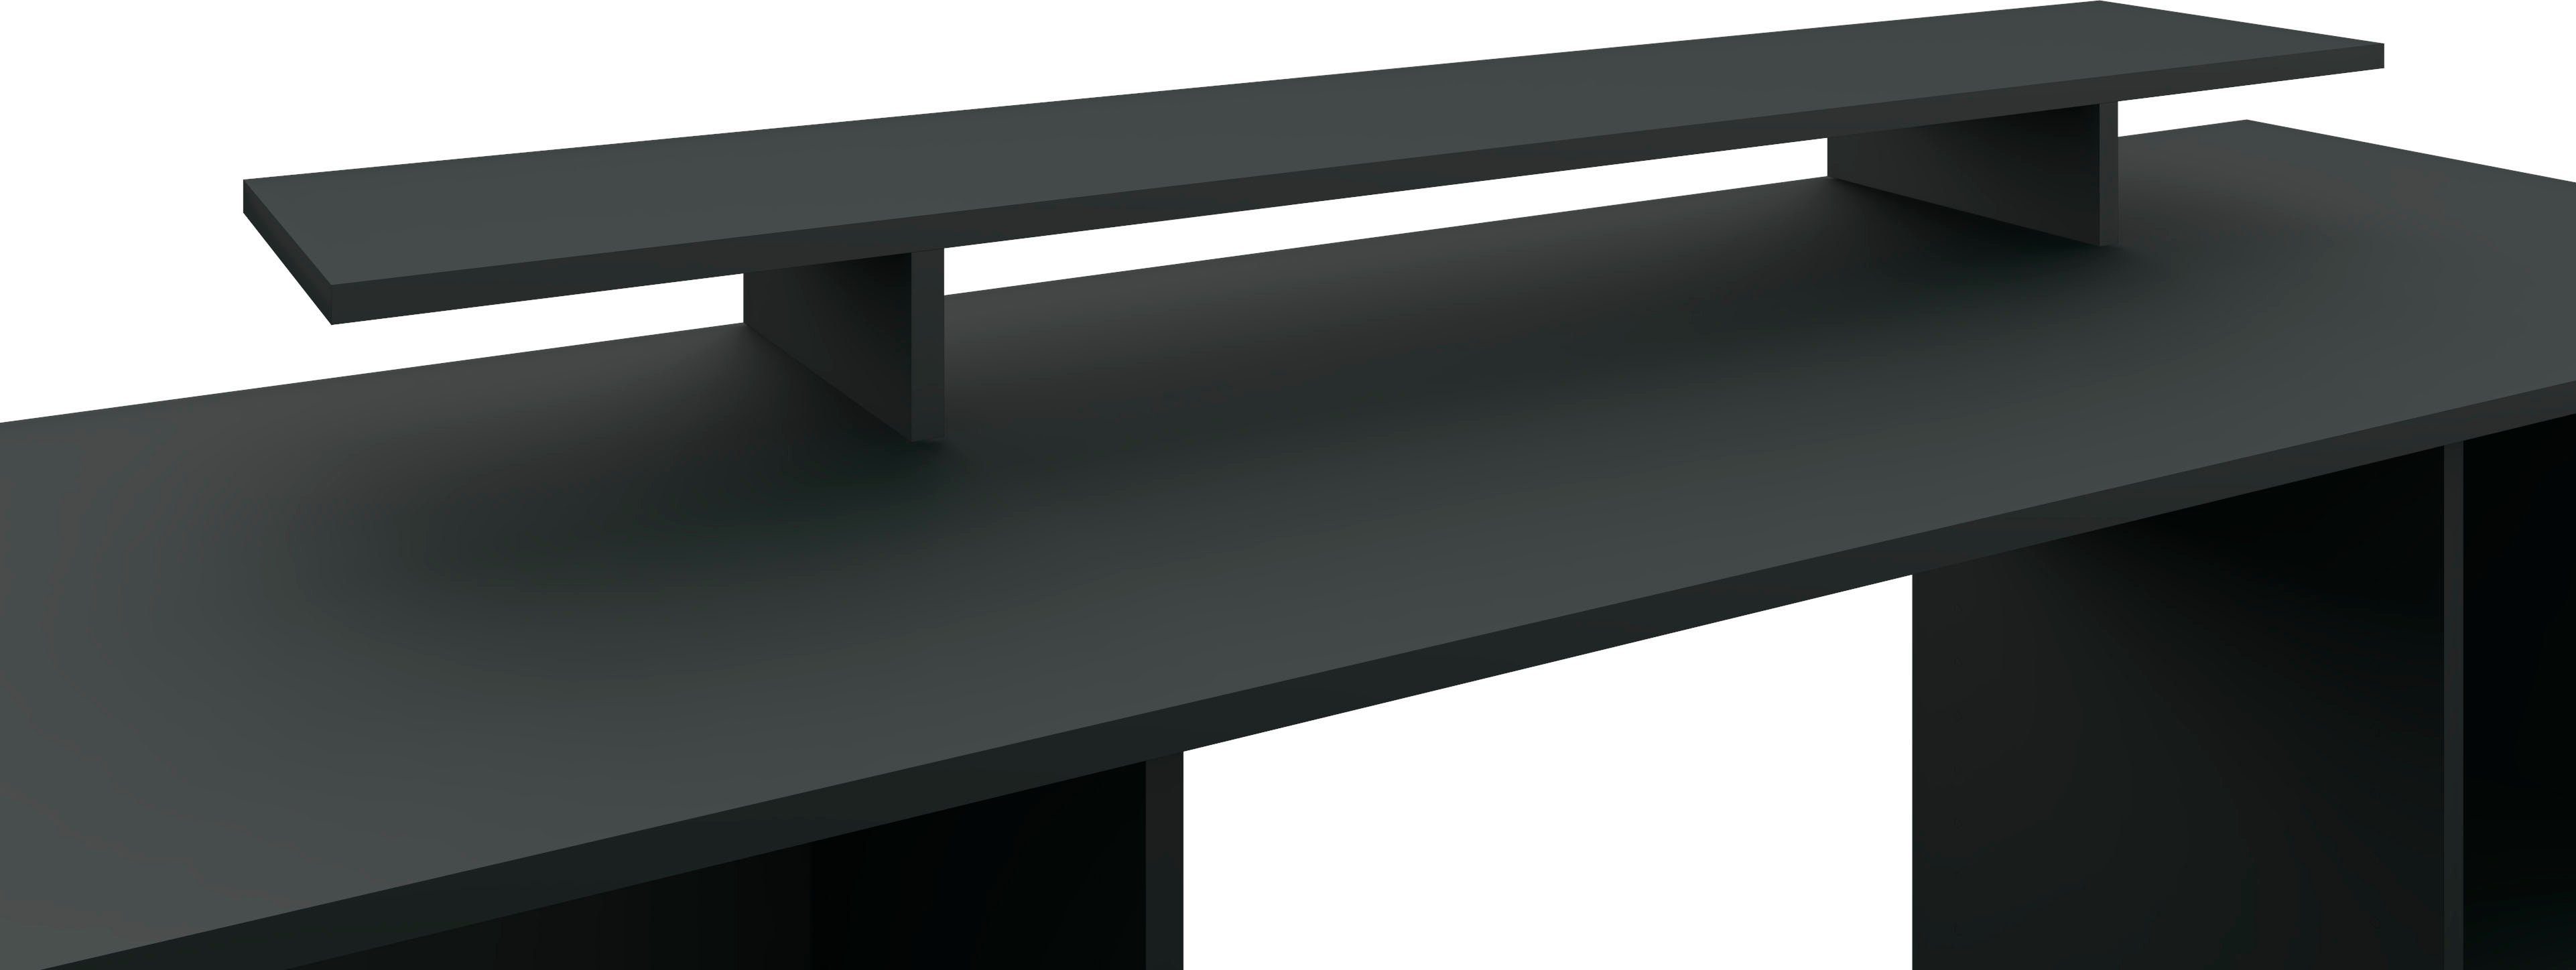 borchardt Germany in Kai, Monitorständer, Möbel Made modernen im schwarz-matt Bildschirmerhöhung Schreibtischaufsatz Design,